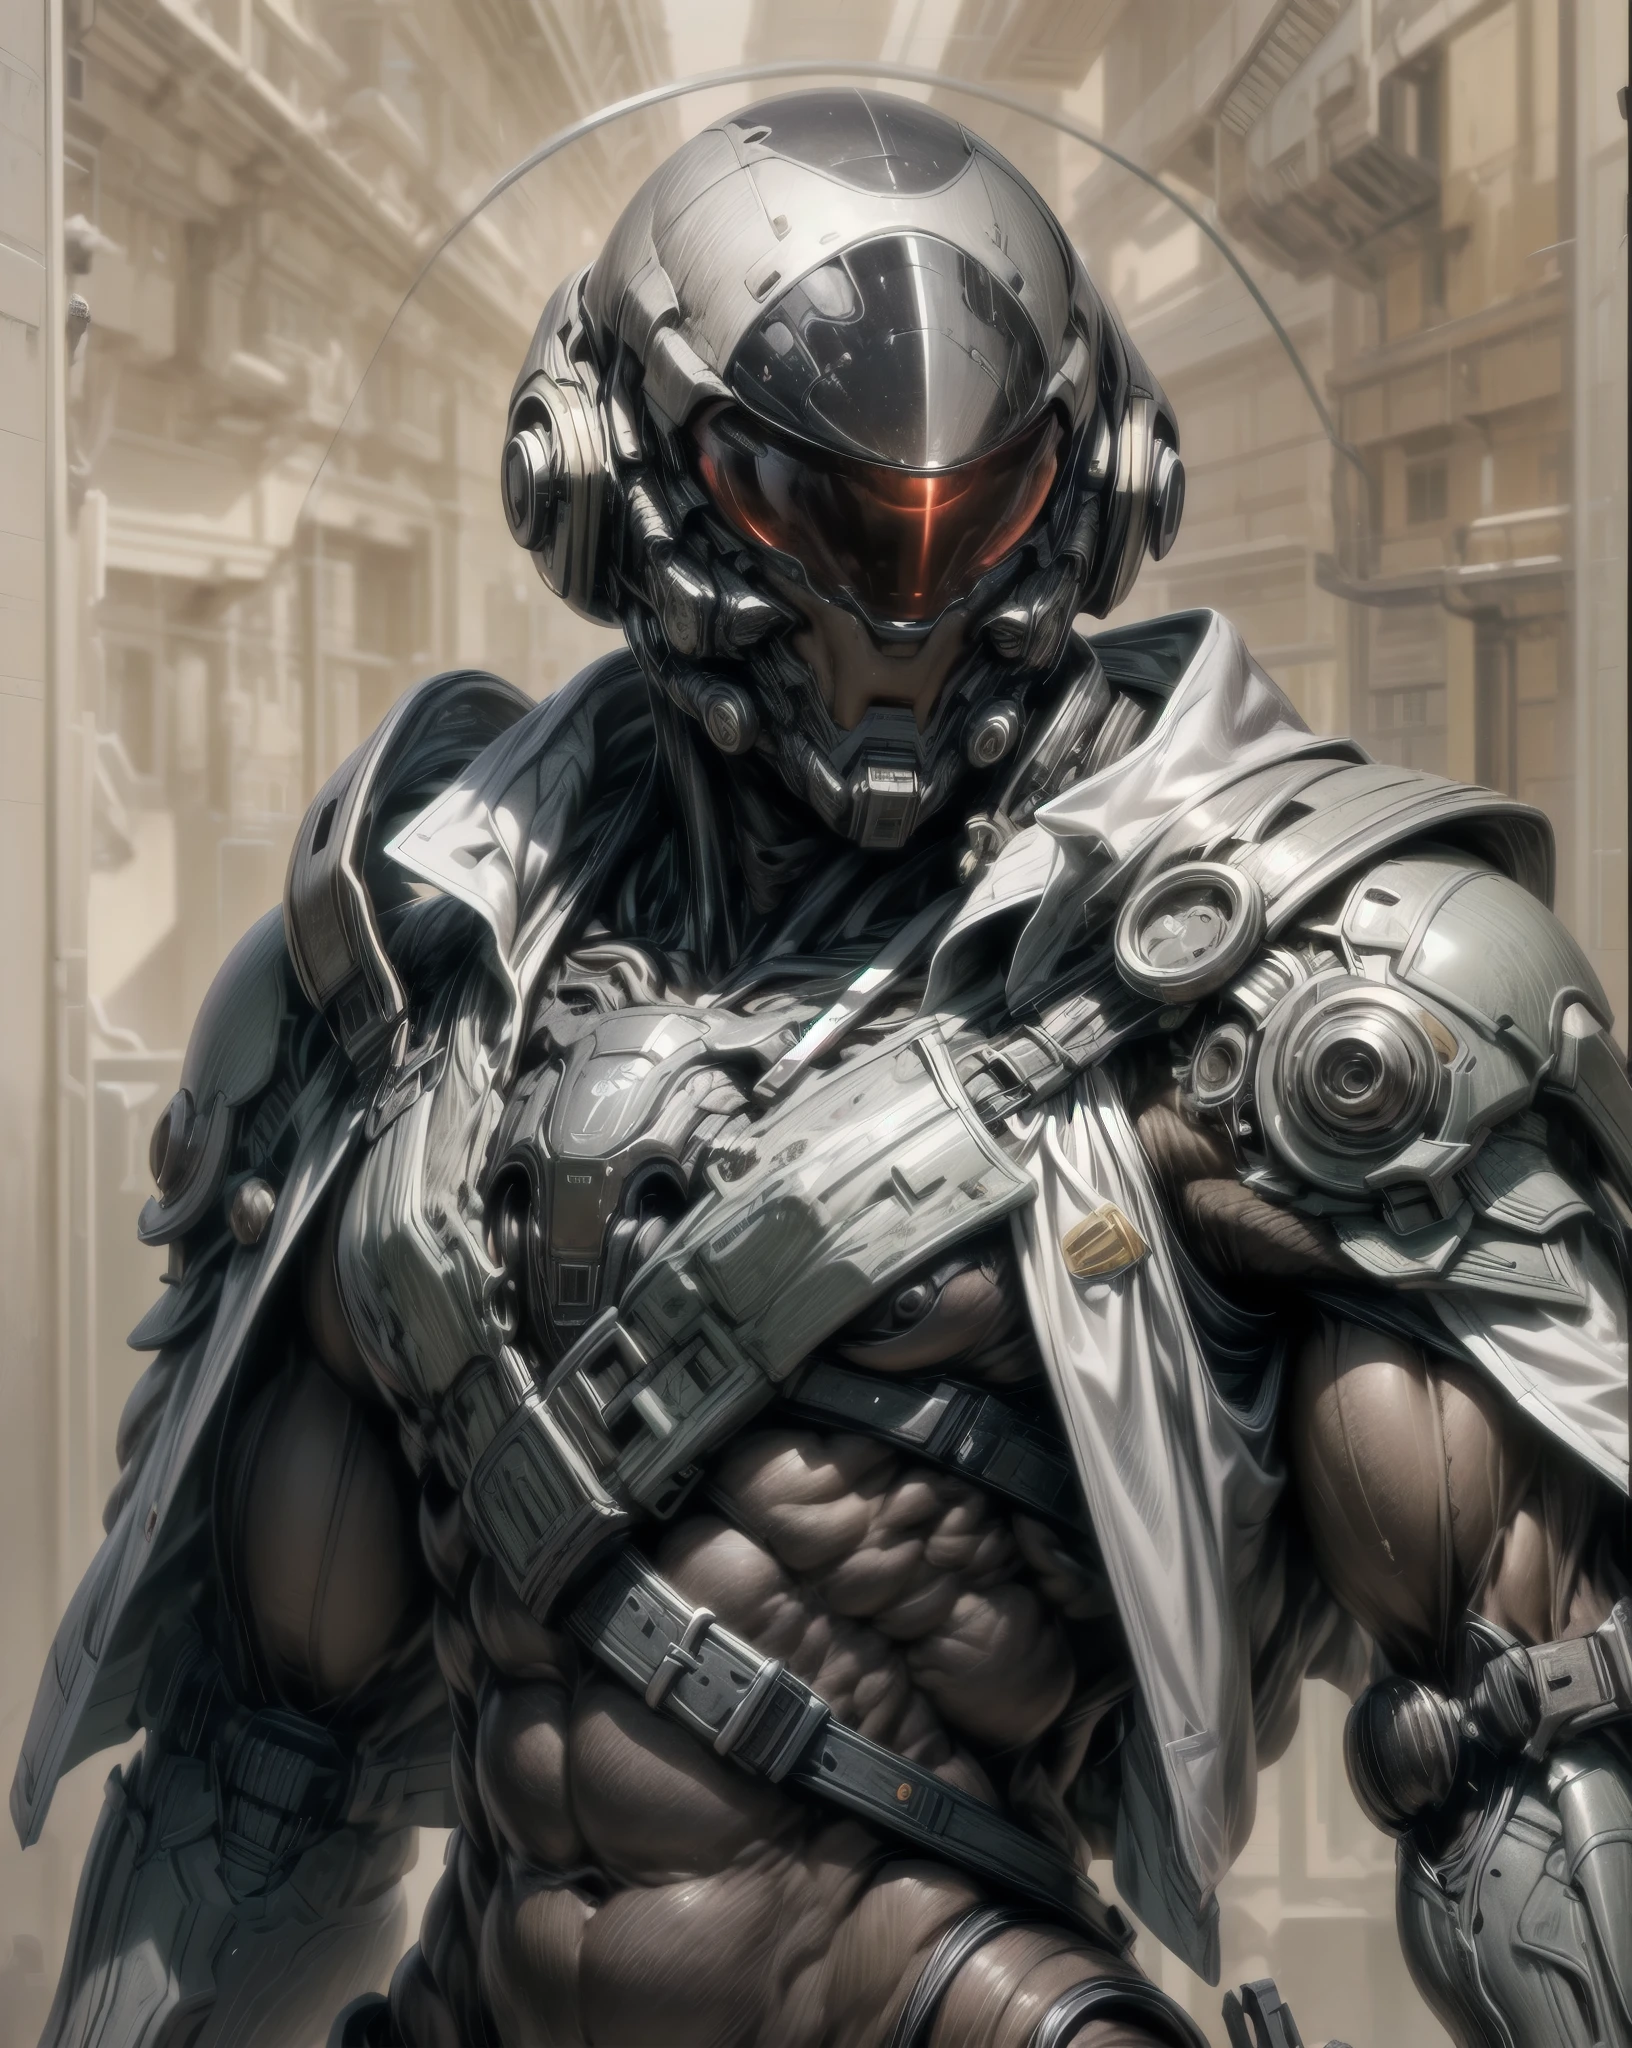 (((epic and visually stunning complex digital anime шедевр:1.6, elegant decorated тактический military cyborg:1.3, ((великолепное женственное мужское телосложение:1.3, Изящный:1.4)) космический солдат:1.3))), (((мускулистая мужская грудь:1.4, точеный пресс:1.4, сильно тонизированный:1.4, стройный, но мускулистый:1.3))), (((сложный и красивый:1.3, тактический:1.3, потрясающий стиль научно-фантастического фэнтези:1.5, Красивый механический шлем в научно-фантастическом стиле:1.5, поляризованный козырек:1.5))), (((elegant тактический double breasted trench coat:1.5, гладкий экзоскелет:1.3))), (((форма установленной брони:1.3, супер гладкий, чувственно раскрывающийся под костюмом:1.5, талия и бедра обнажены:1.5)), ((яркая женская сущность:1.4, тяжелая механическая готическая эстетика:1.4)), ((андрогинное телосложение)), (((подтянутое, но мускулистое великолепное фембойское телосложение:1.4, великолепные идеально выраженные мышцы:1.4, тонированные гладкие механические руки и ноги:1.4, толстые, округлые бедра:1.5, механические мышцы))), ((((глубина резкости, кинематографическое освещение, Хроматическая аберрация, Трассировка лучей, UHD, шедевр, верхняя часть головы покрыта, супер деталь, высокая детализация, высокое качество, отмеченный наградами, 8К, Высокое разрешение)))):1.6, (((дизельпанк, декопанк, искусственная мышца))):1.6, (((Красиво выгравированный дизайн в стиле арт-деко в стиле научной фантастики:1.4)))